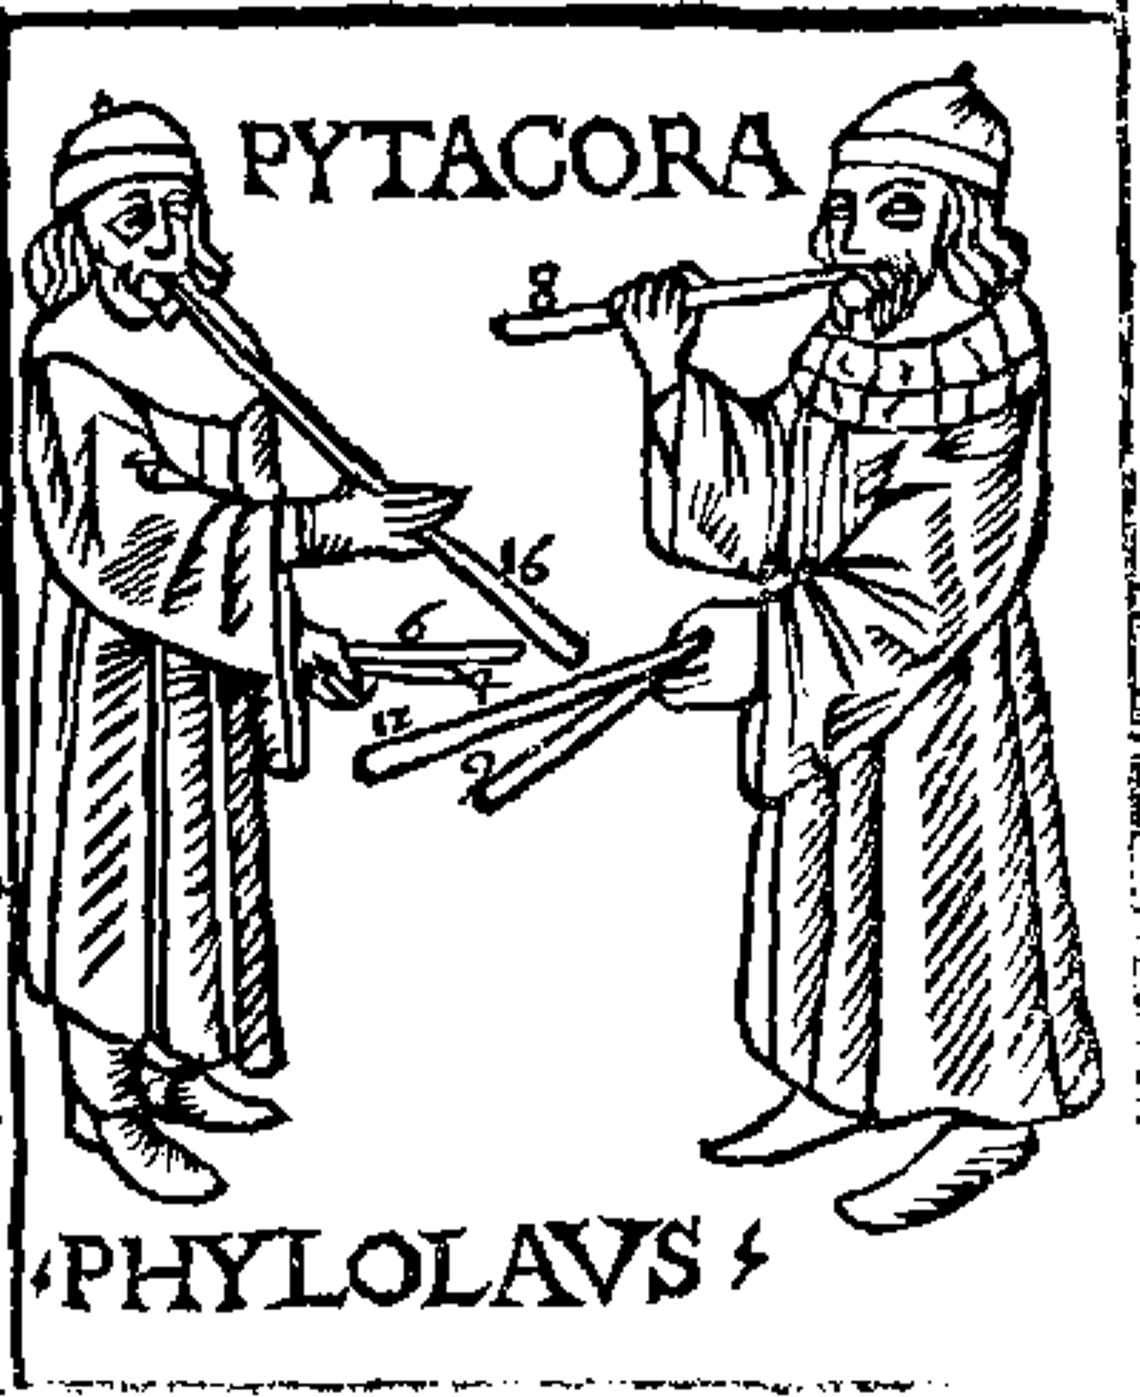 Pitagora și Filolaus